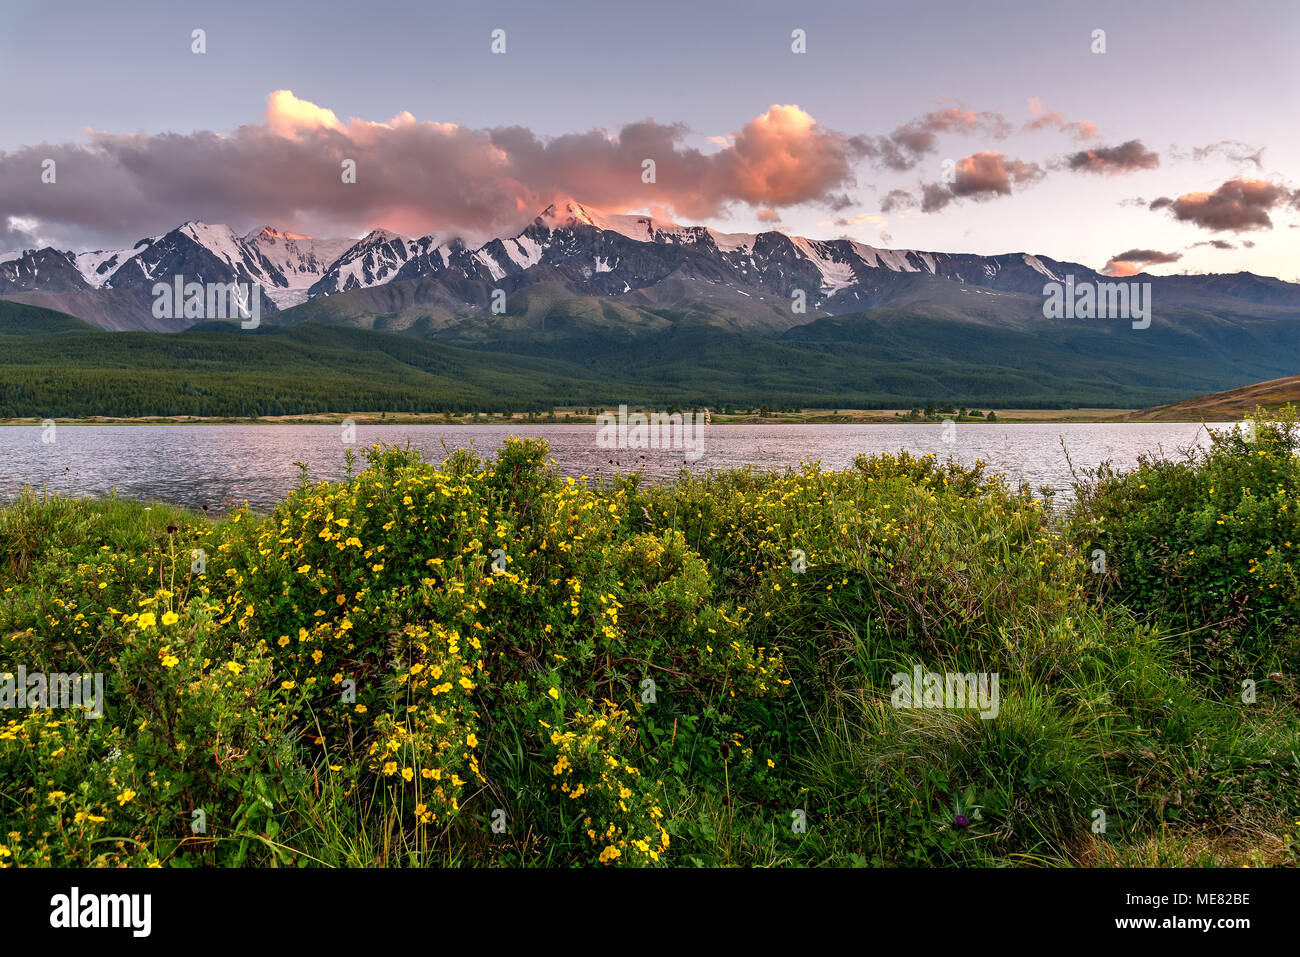 Un paesaggio fantastico con montagne, neve e foresta sulle pendici, cespugli di Curili tè sulla riva del lago e le nuvole rosa al tramonto Foto Stock